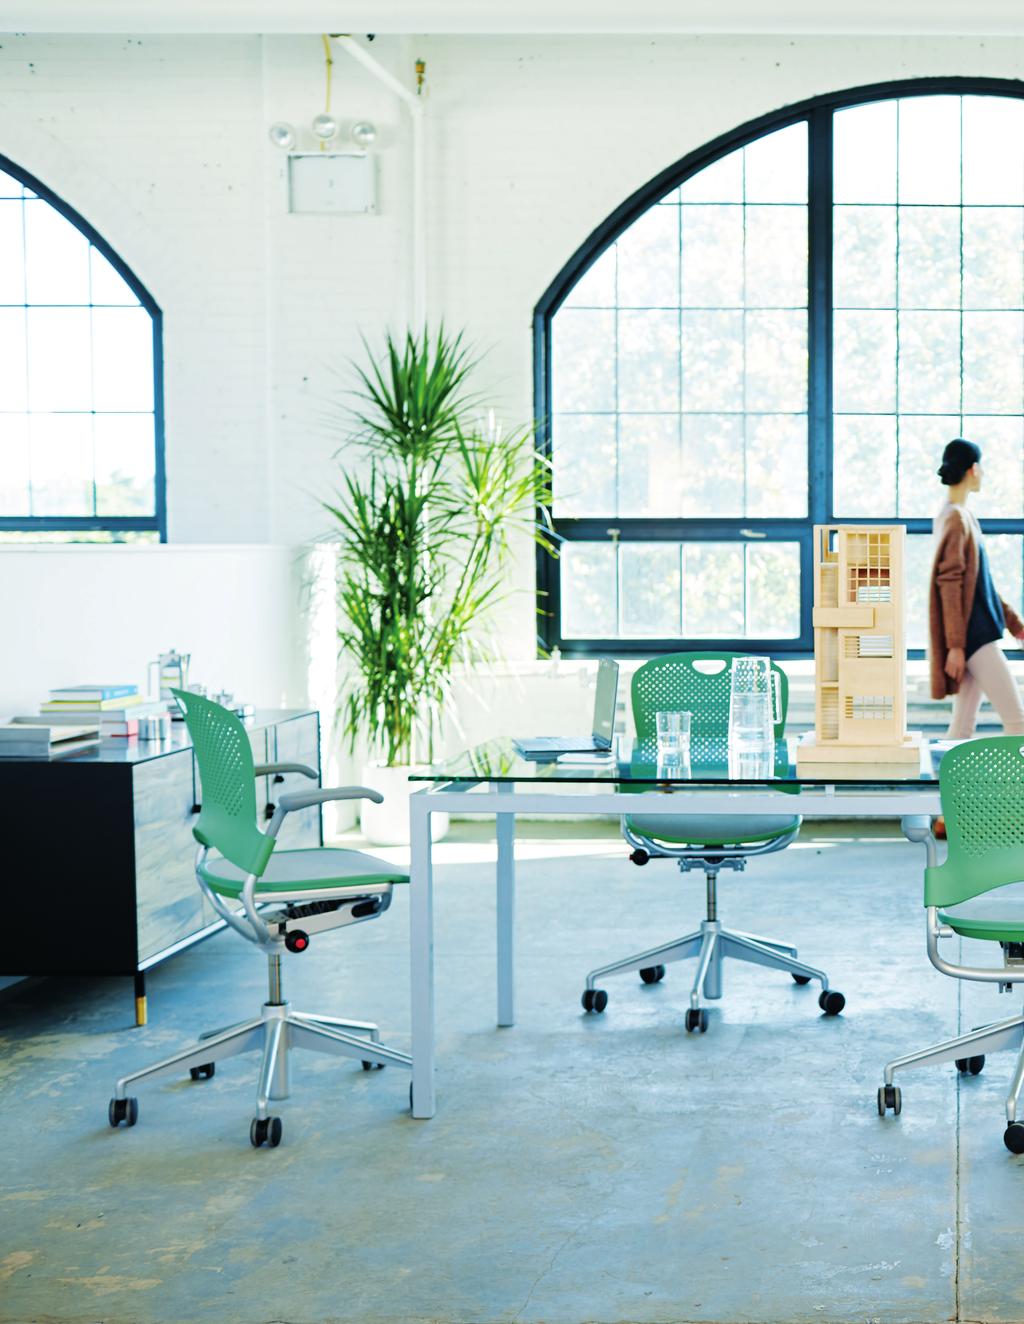 O Office 365 altera o modo como sua organização trabalha, permitindo que indivíduos e equipes sejam mais produtivos.